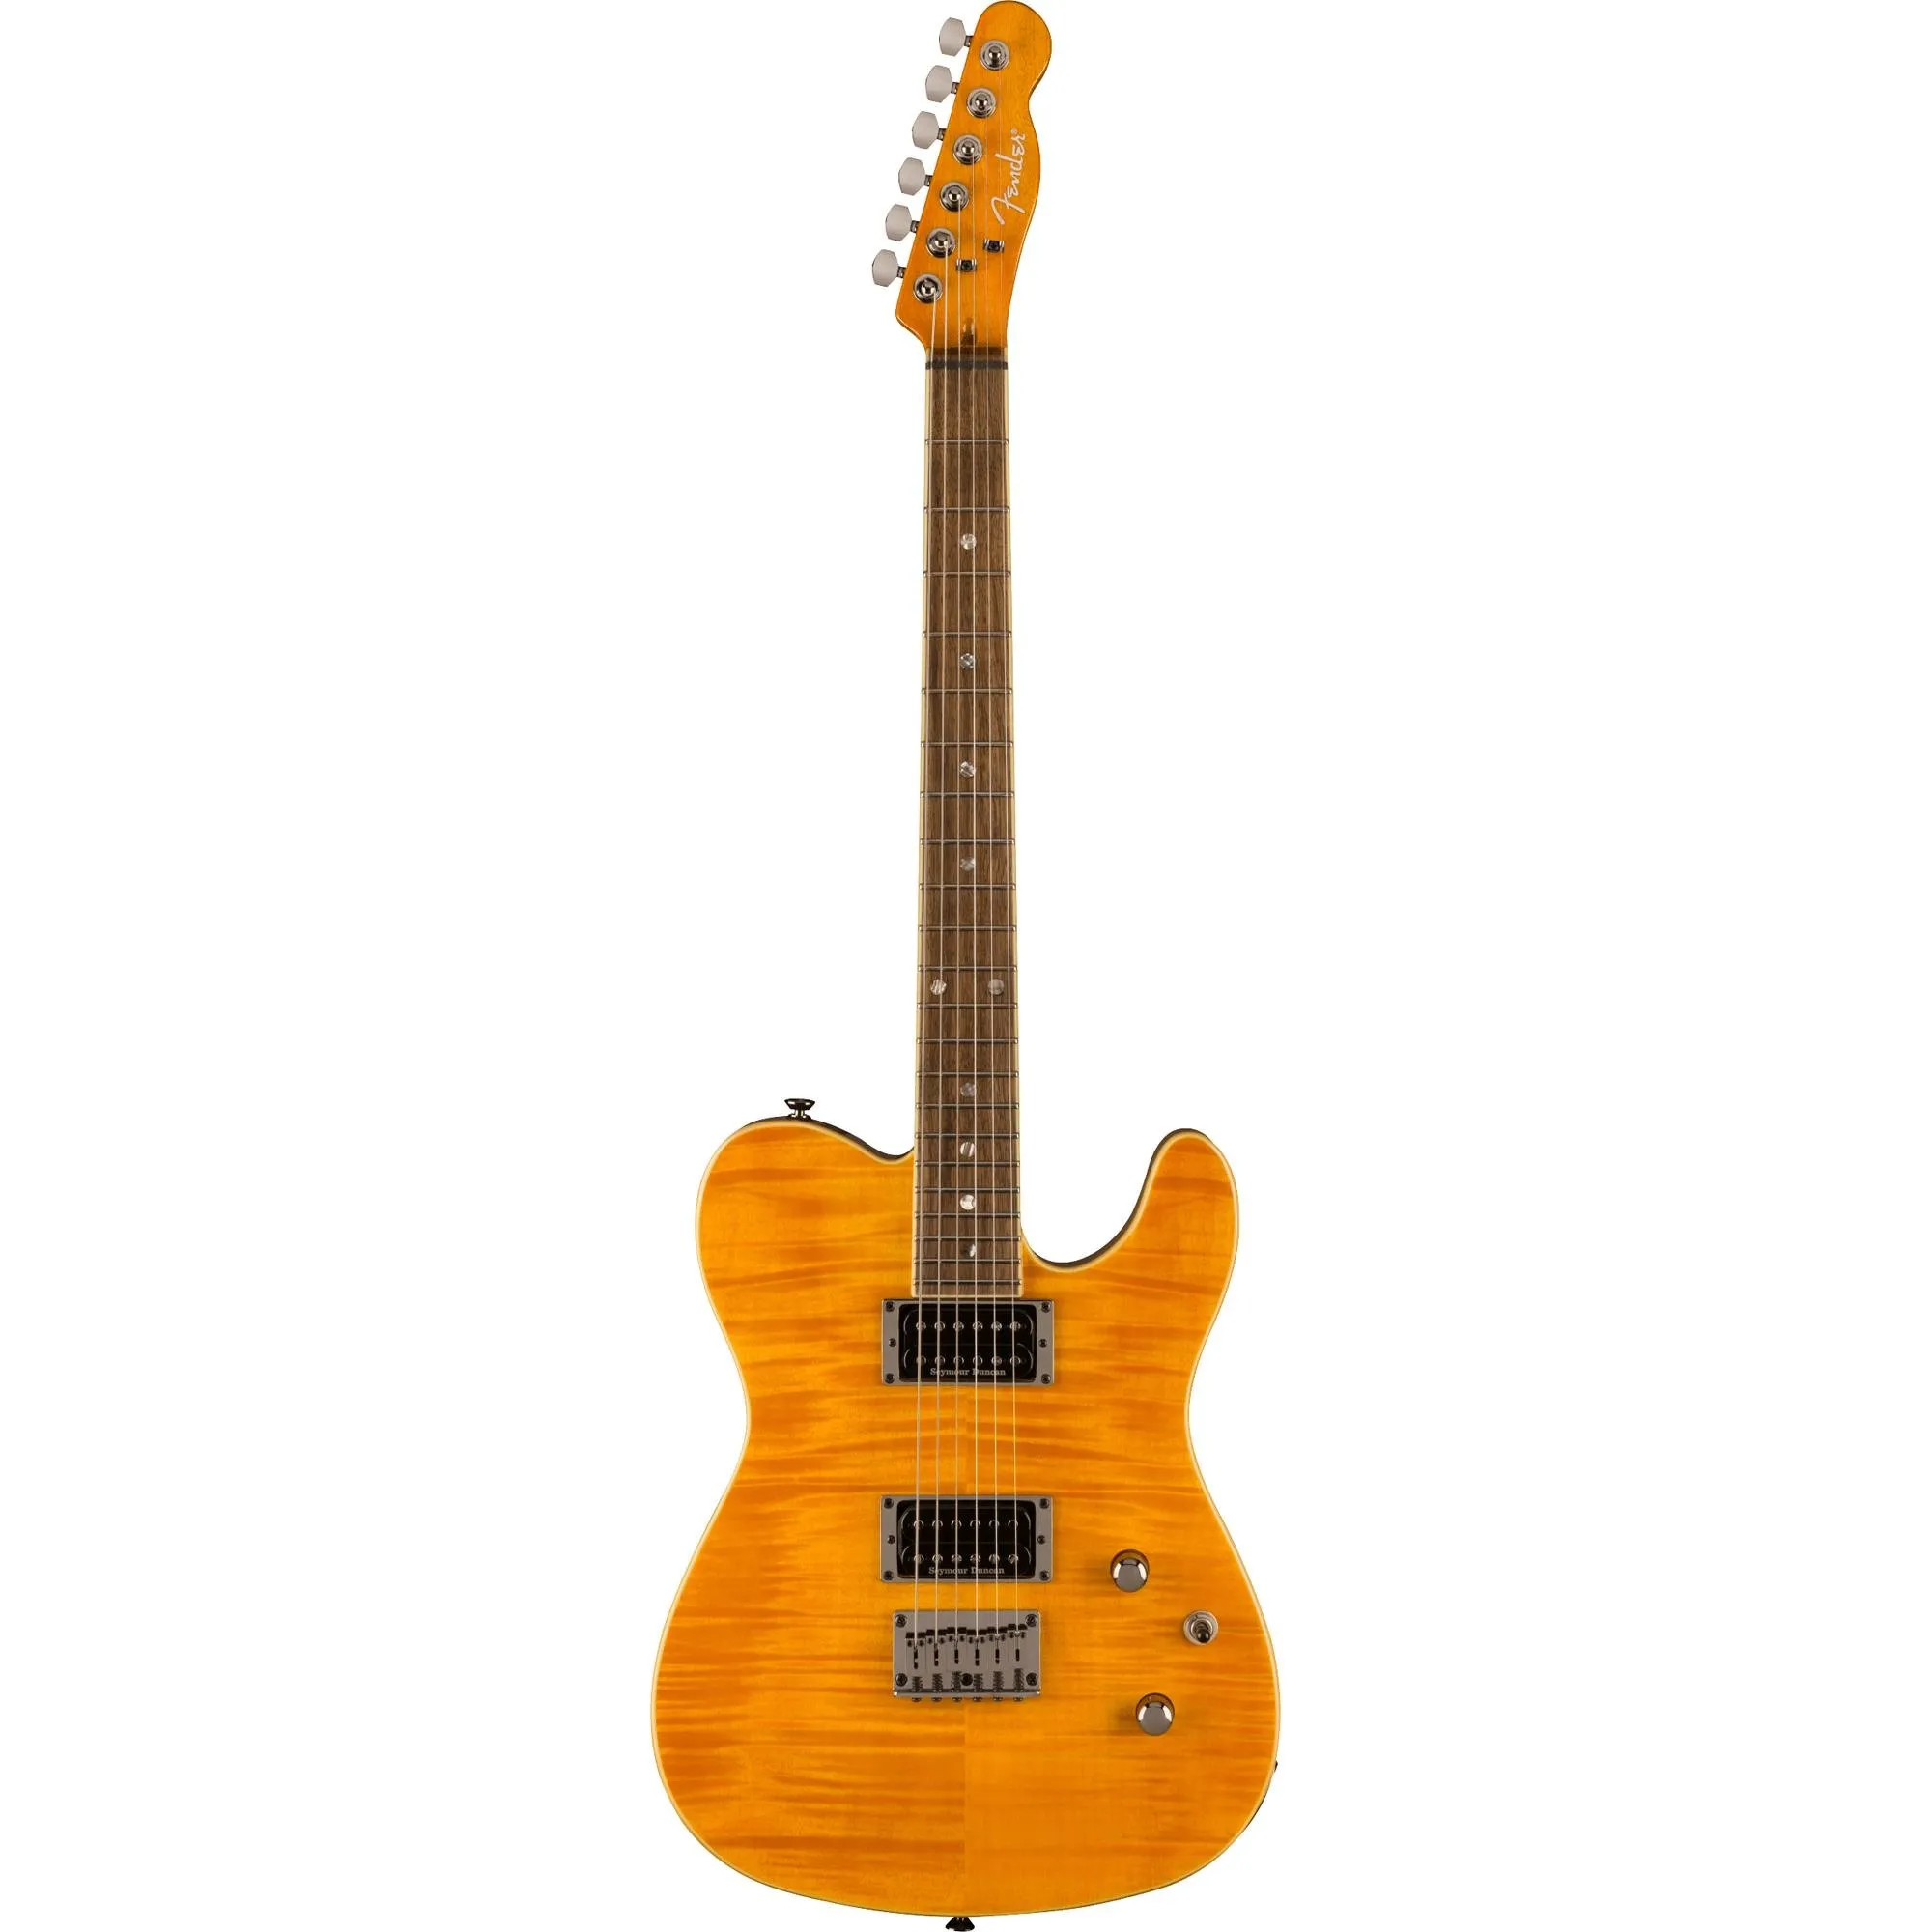 Guitarra Fender Telecaster Special Edition Custom FMT HH Amber por 8.499,99 à vista no boleto/pix ou parcele em até 12x sem juros. Compre na loja Mundomax!